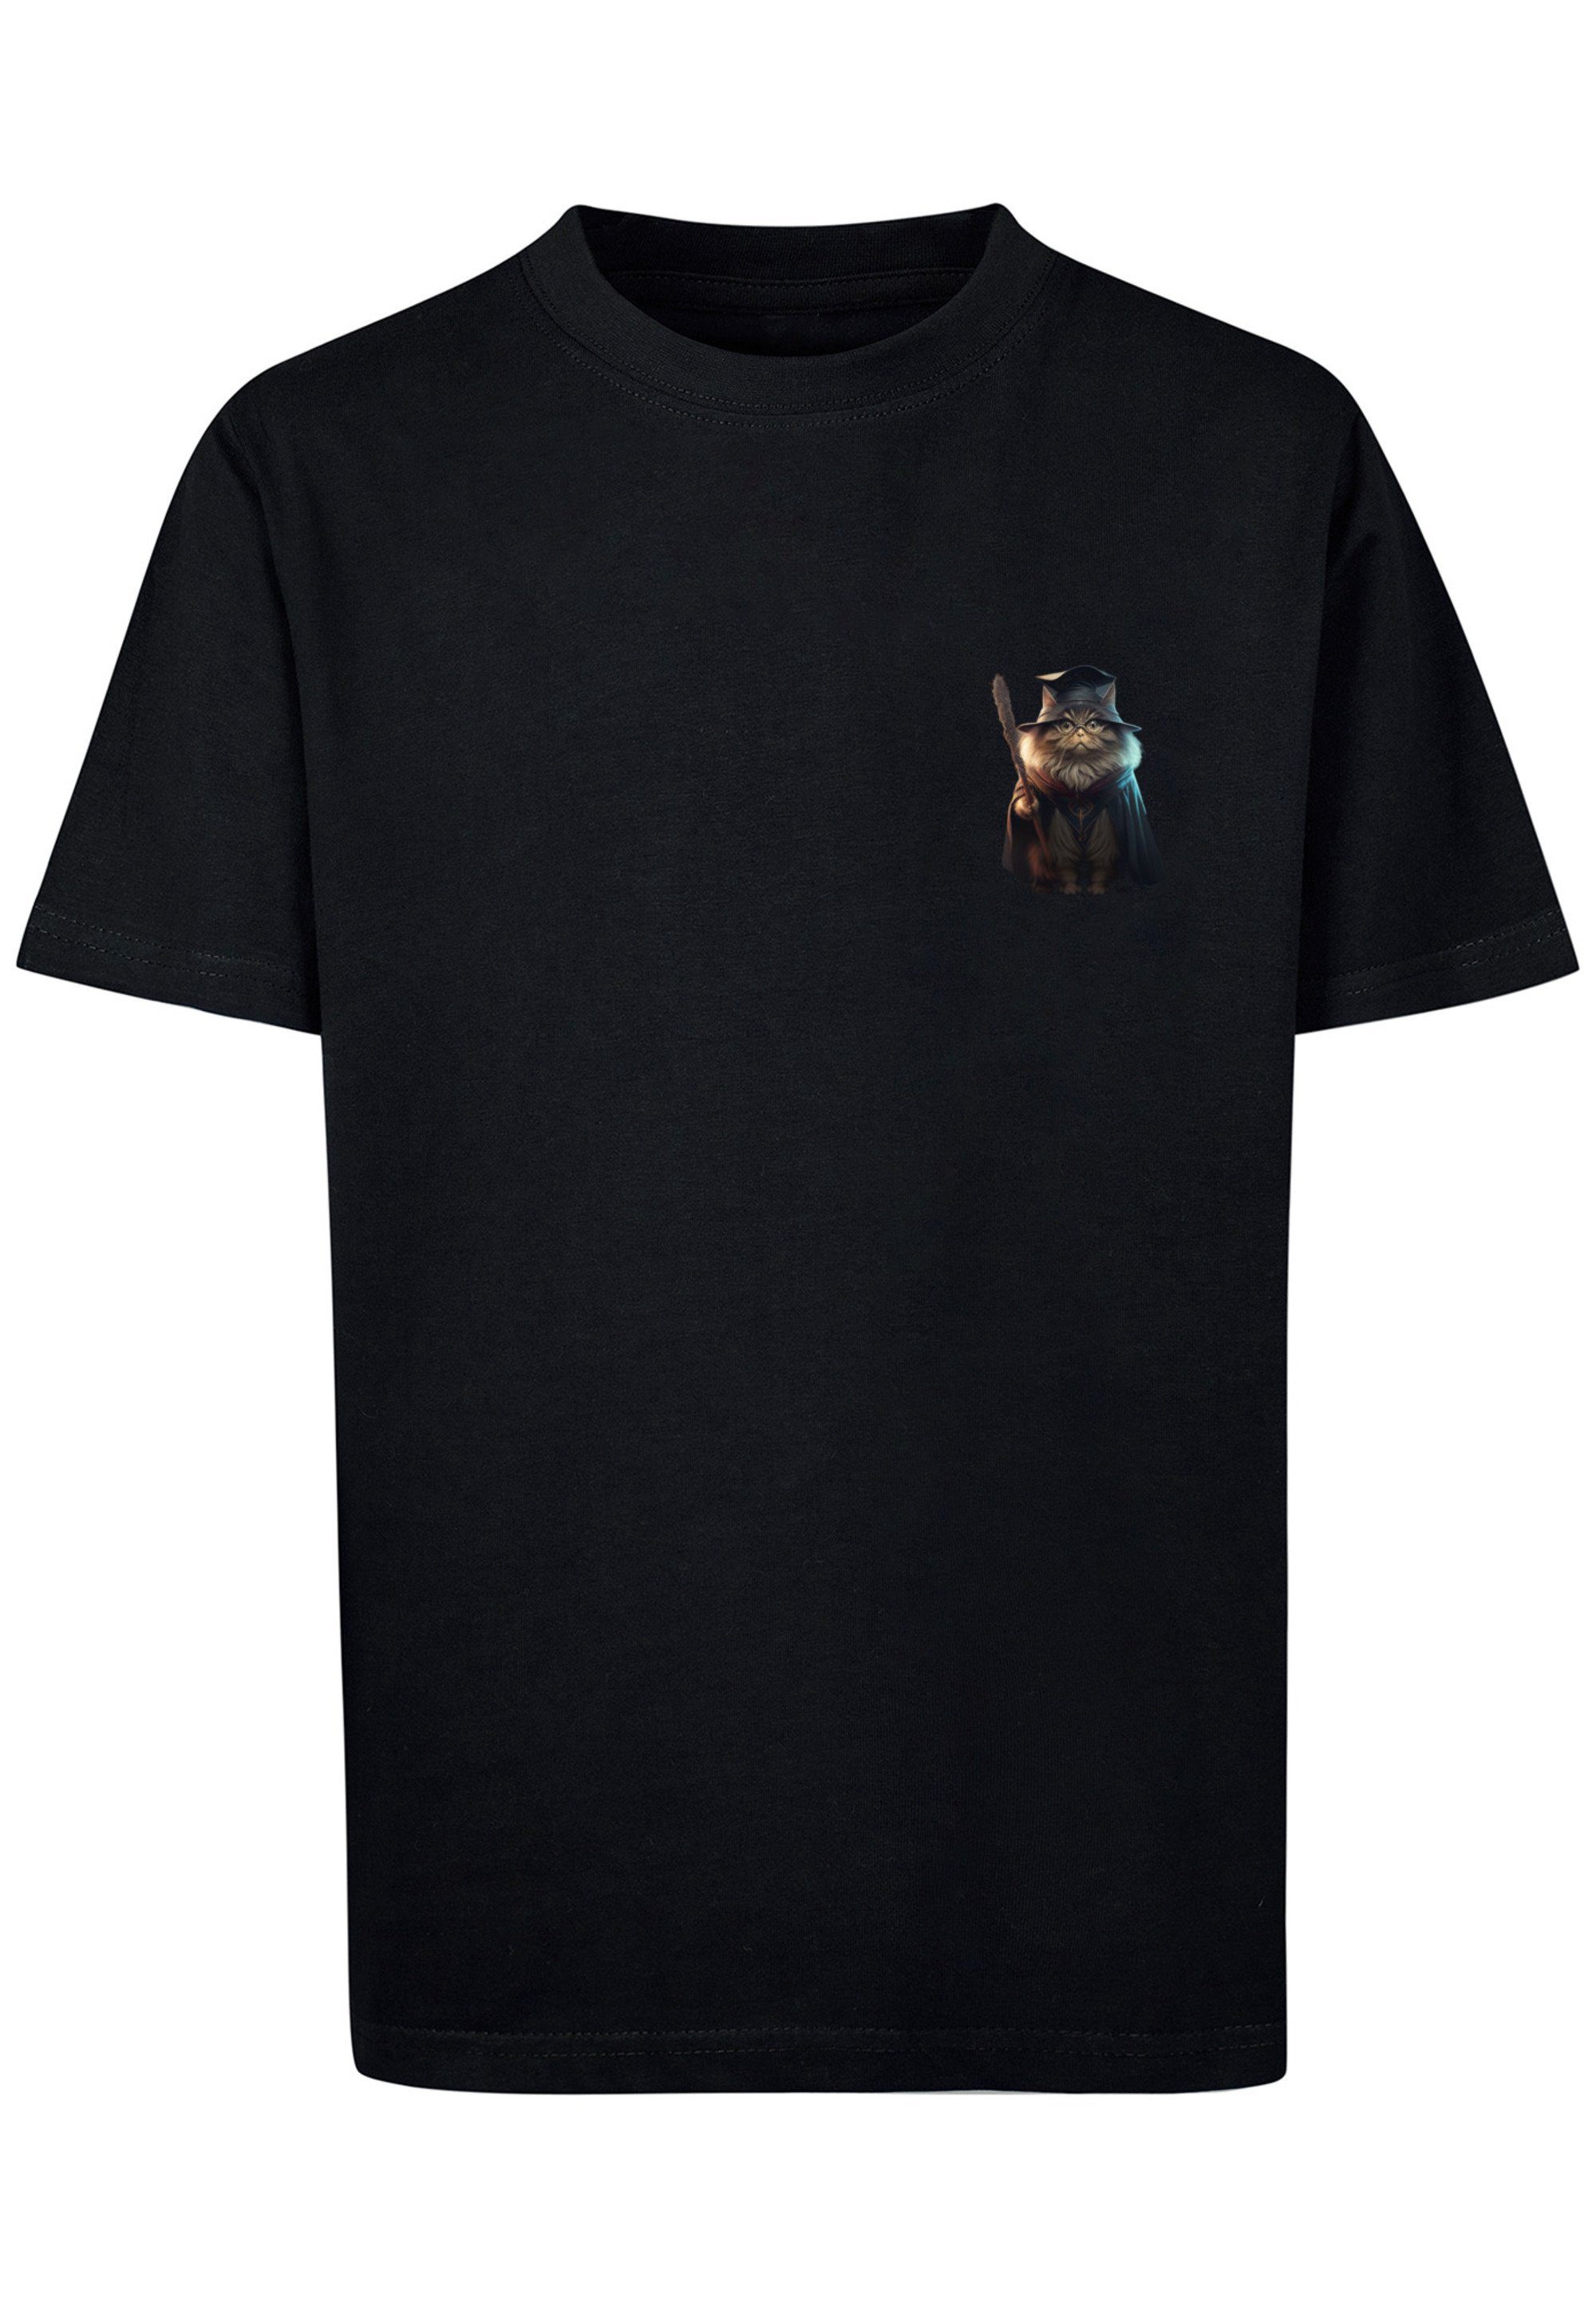 T-Shirt Cat Wizard Print UNISEX TEE F4NT4STIC